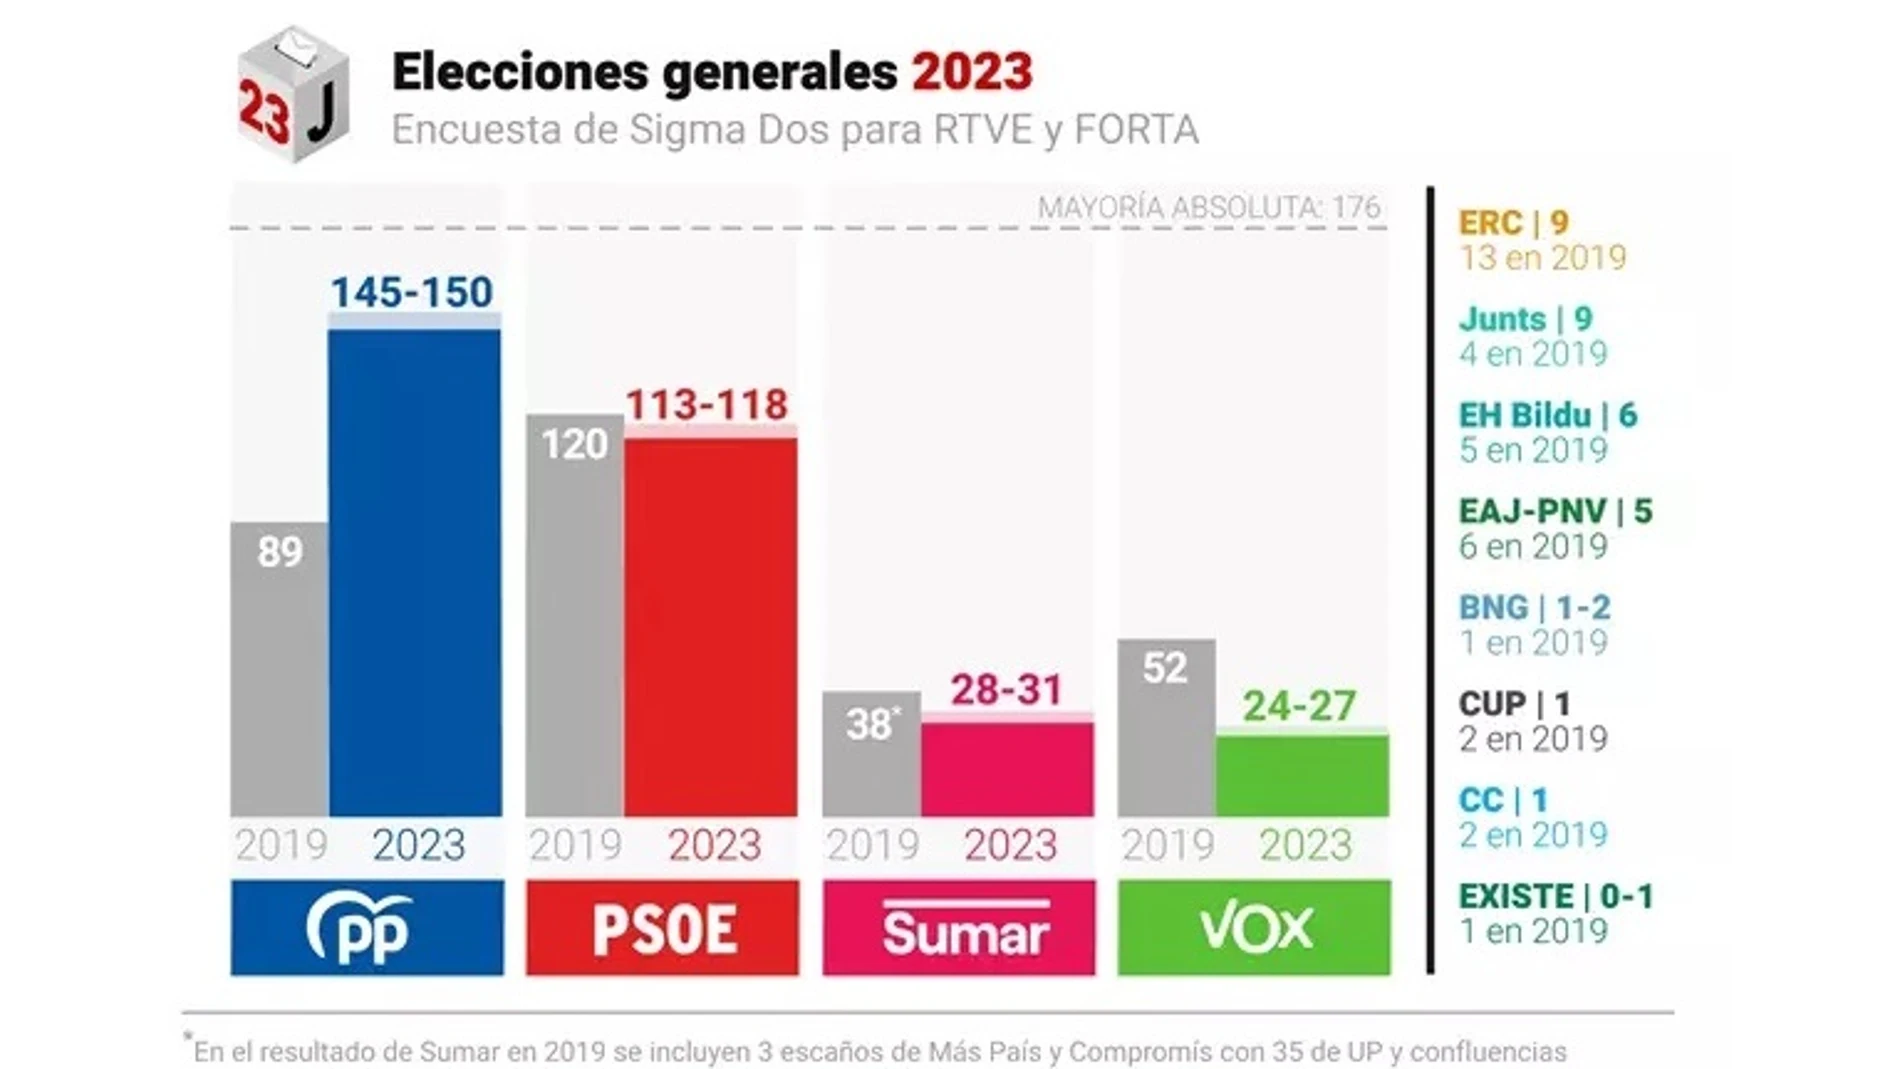 El PP ganaría las elecciones y podría alcanzar mayoría absoluta con Vox